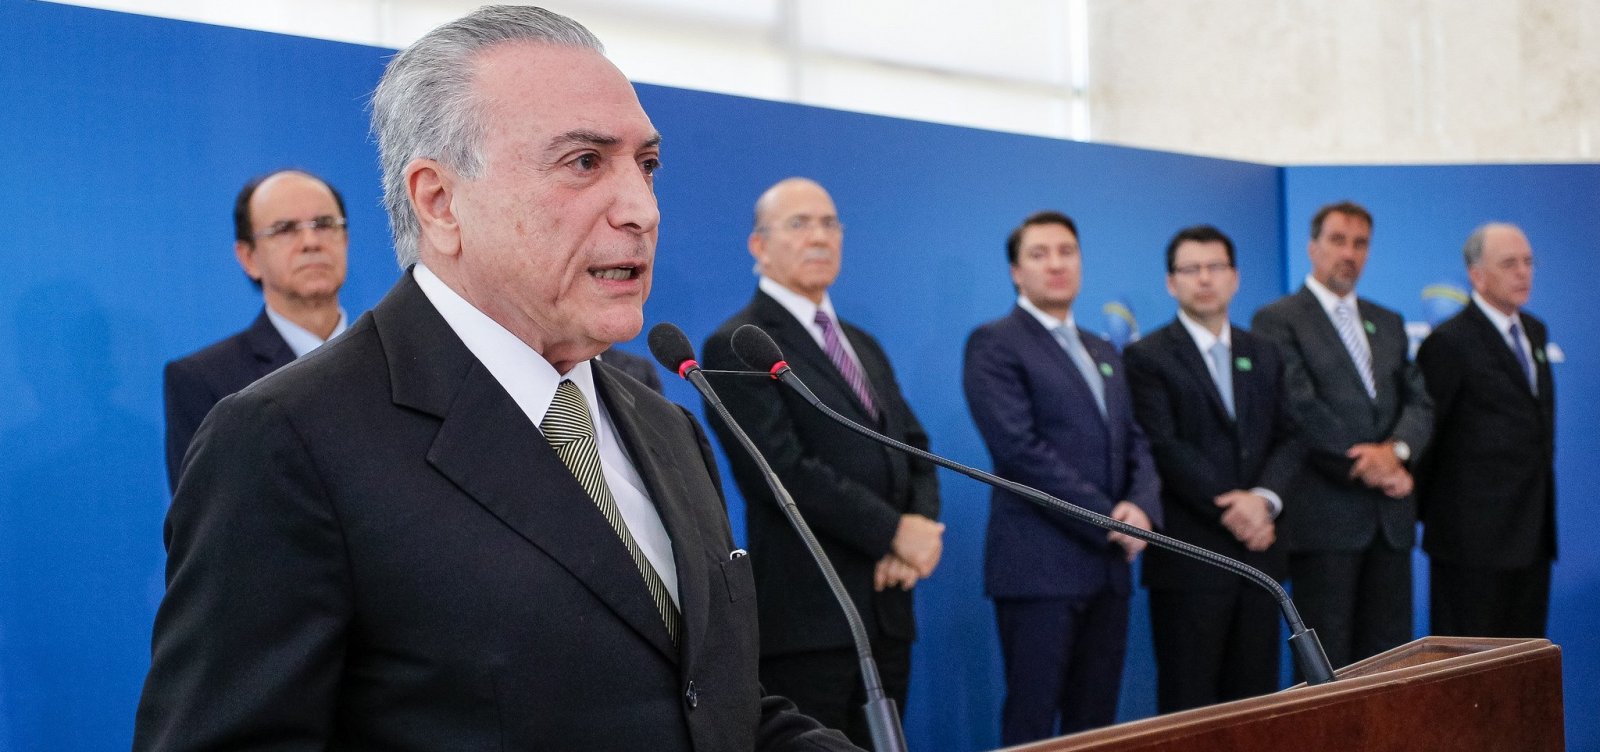 Temer critica ataque a Bolsonaro: 'É intolerável que não haja campanha tranquila'